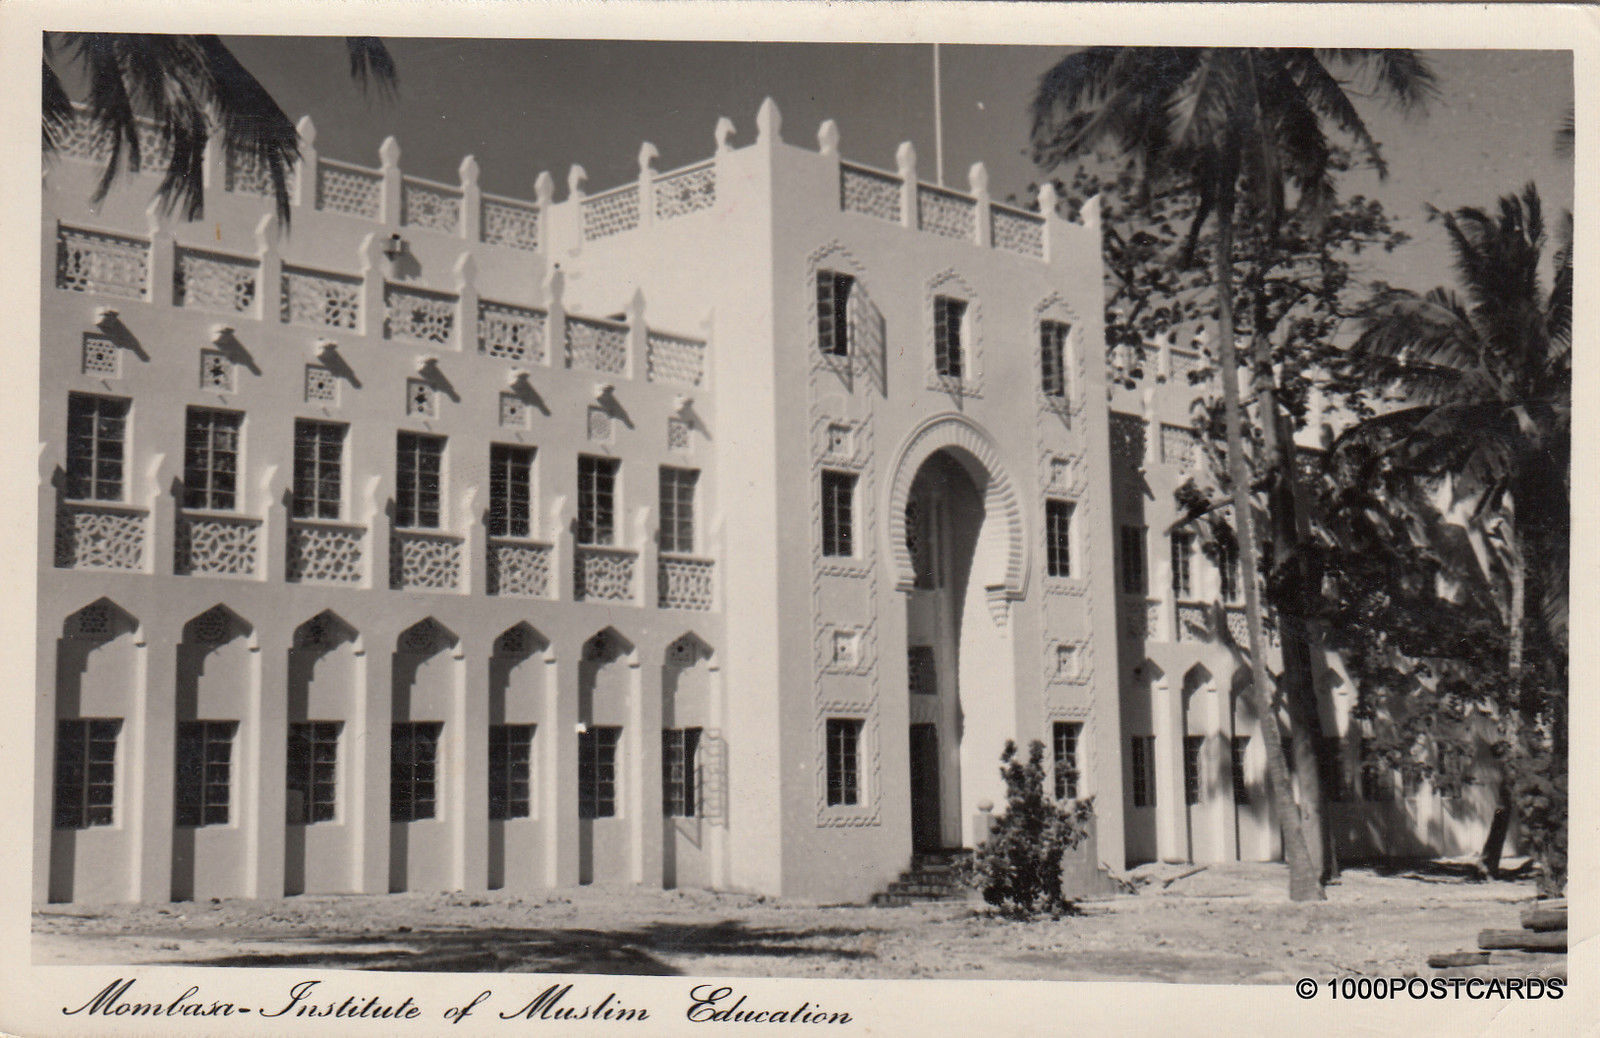 * KENYA - Mombasa - Institute of Muslim Education 1953